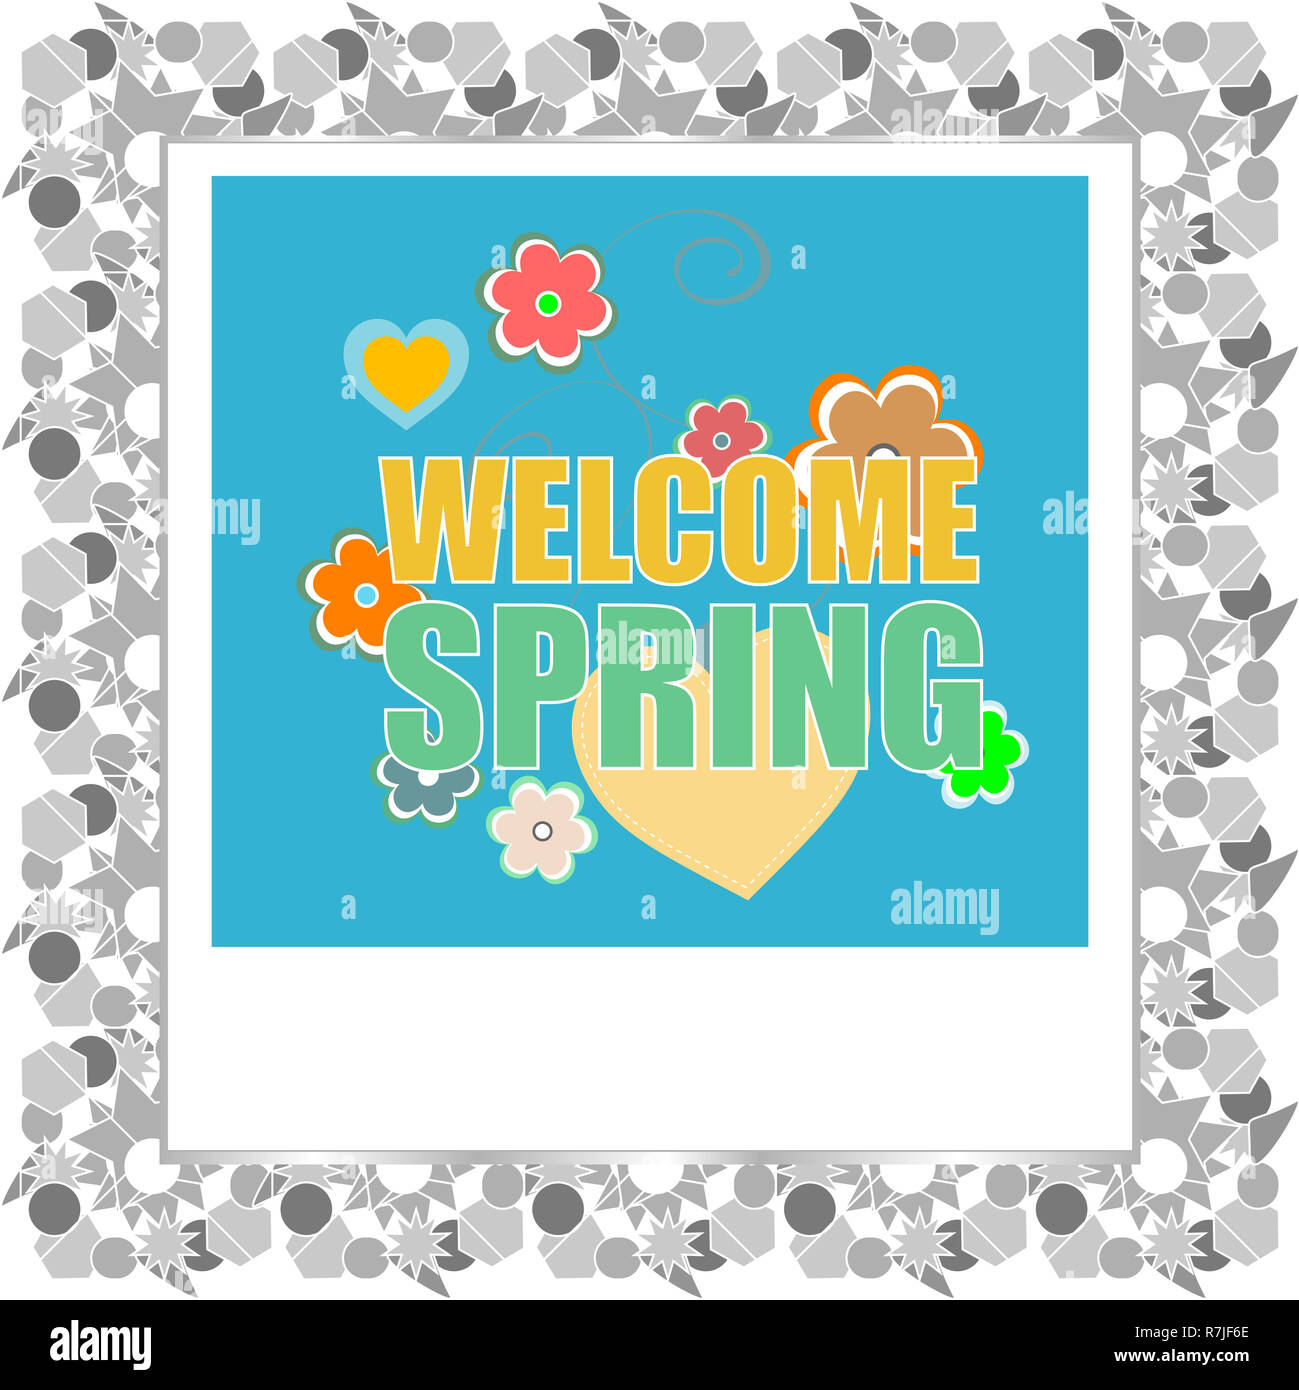 Bienvenue au printemps mots sur holiday card Banque D'Images